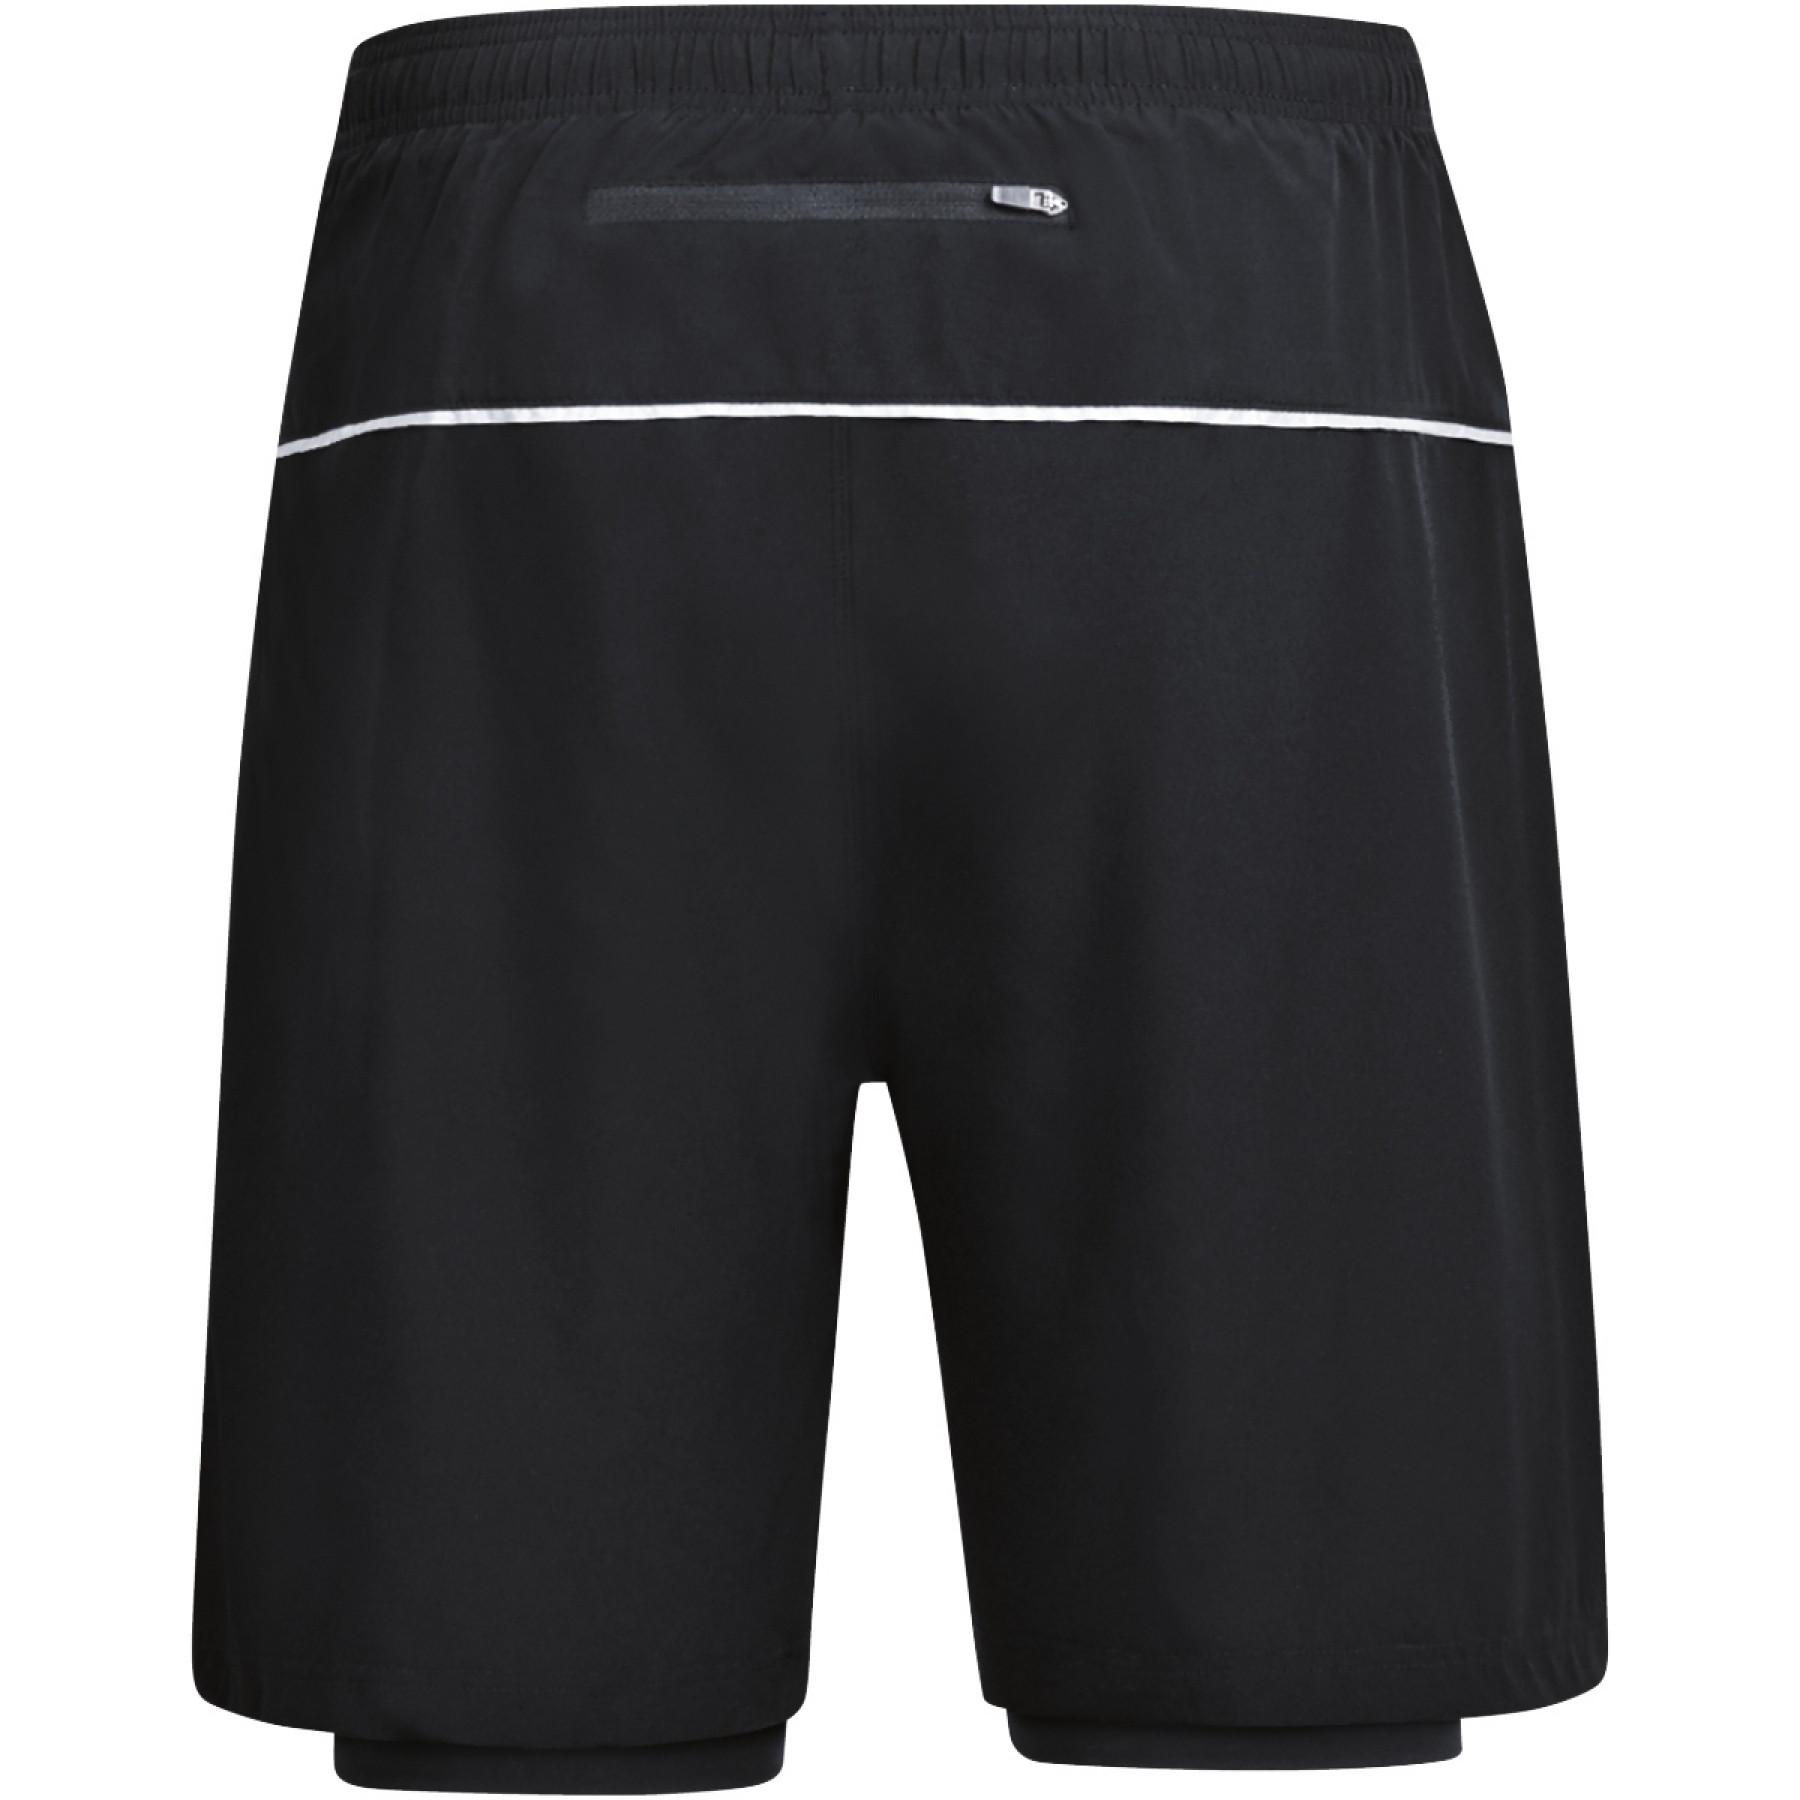 Short Jako 2-en-1 - Shorts - Men's wear - Handball wear